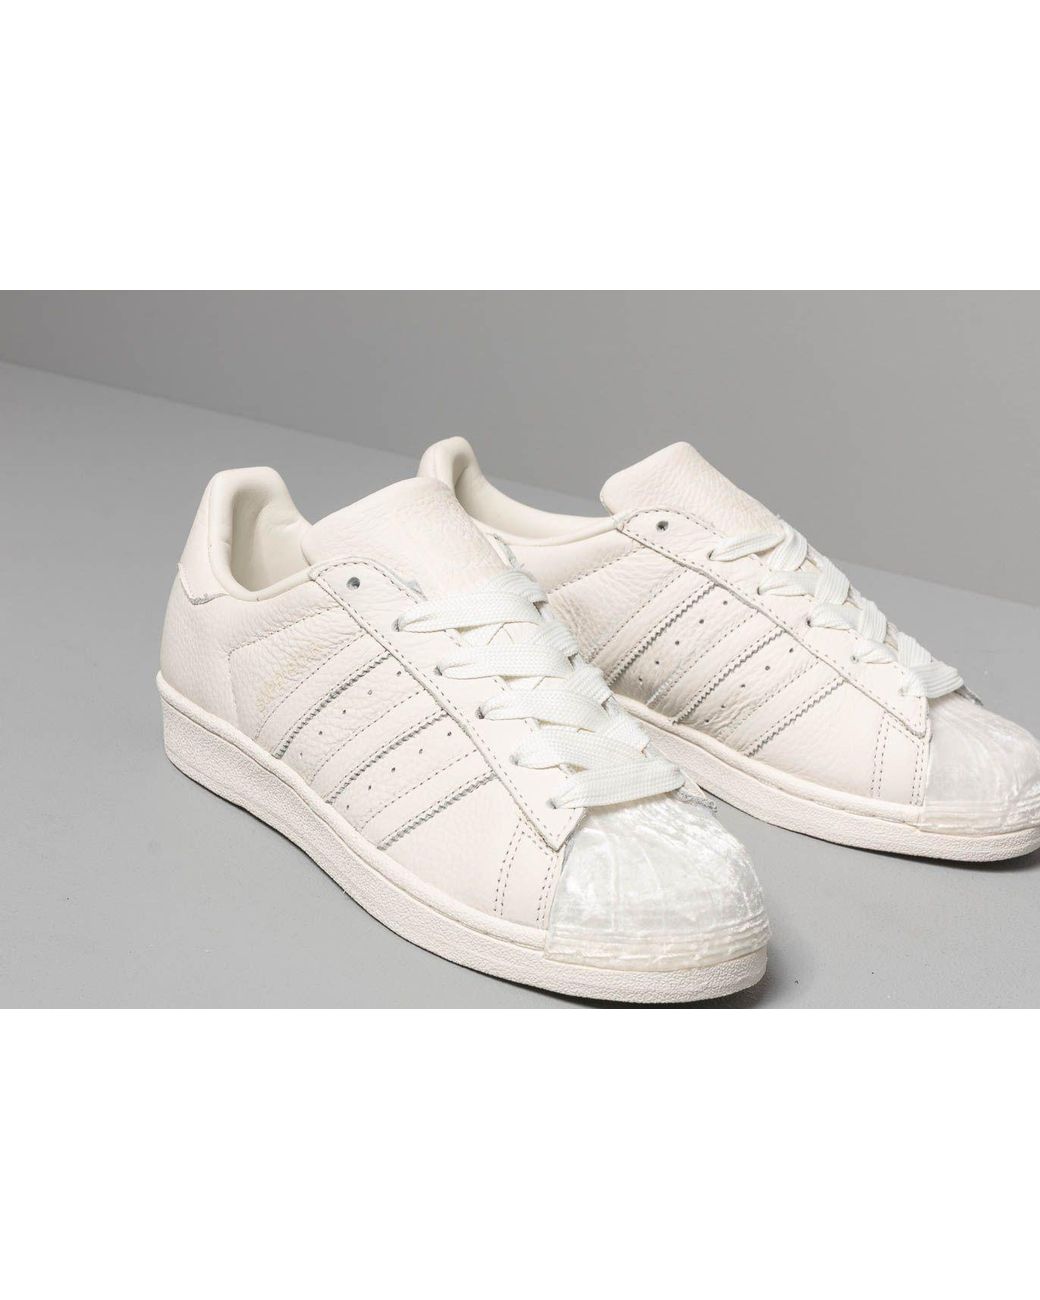 adidas Originals Adidas Superstar W Off White/ Off White/ Off White | Lyst